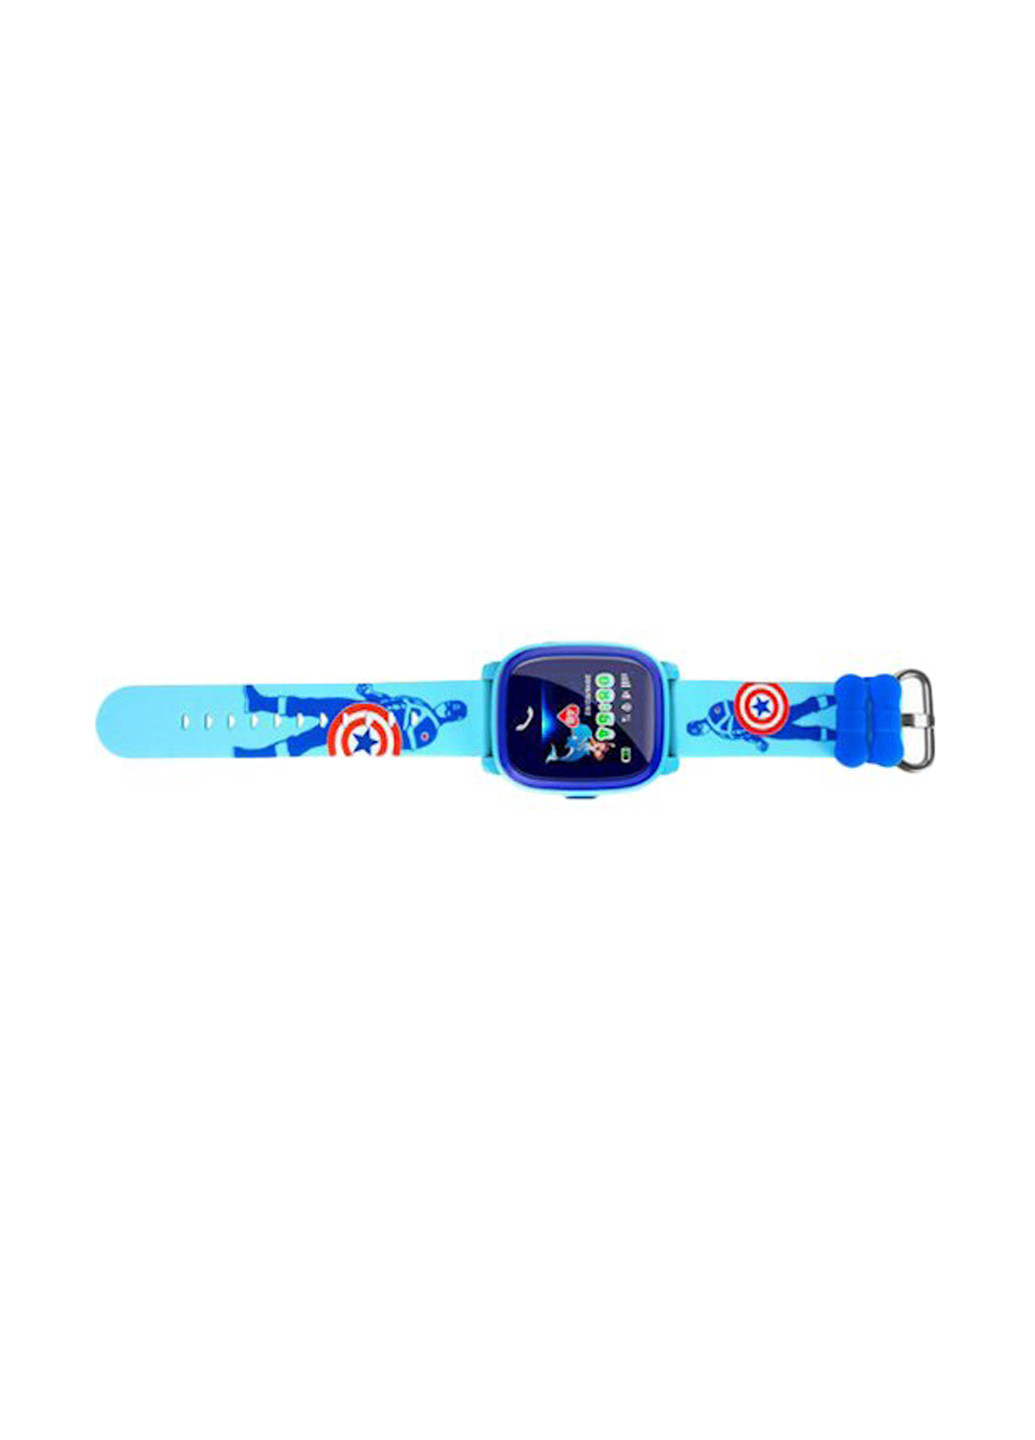 Детские GPS часы-телефон K25 GoGPS Me ME K25 синие